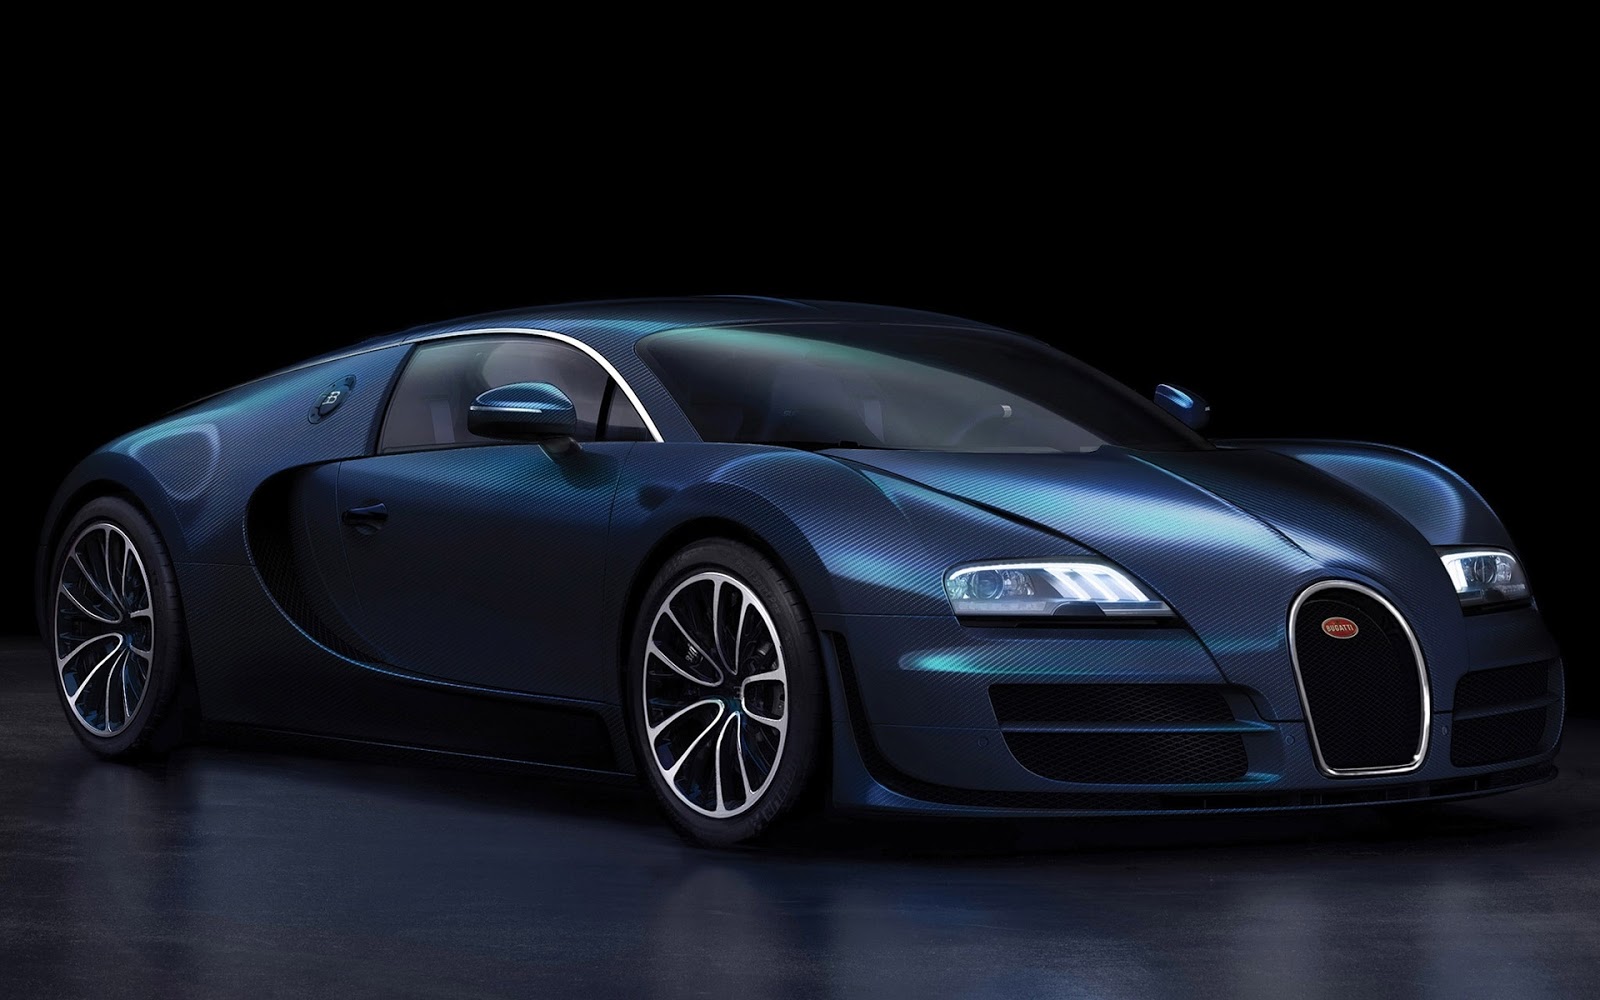 [45+] Bugatti HD Wallpapers 1080p on WallpaperSafari